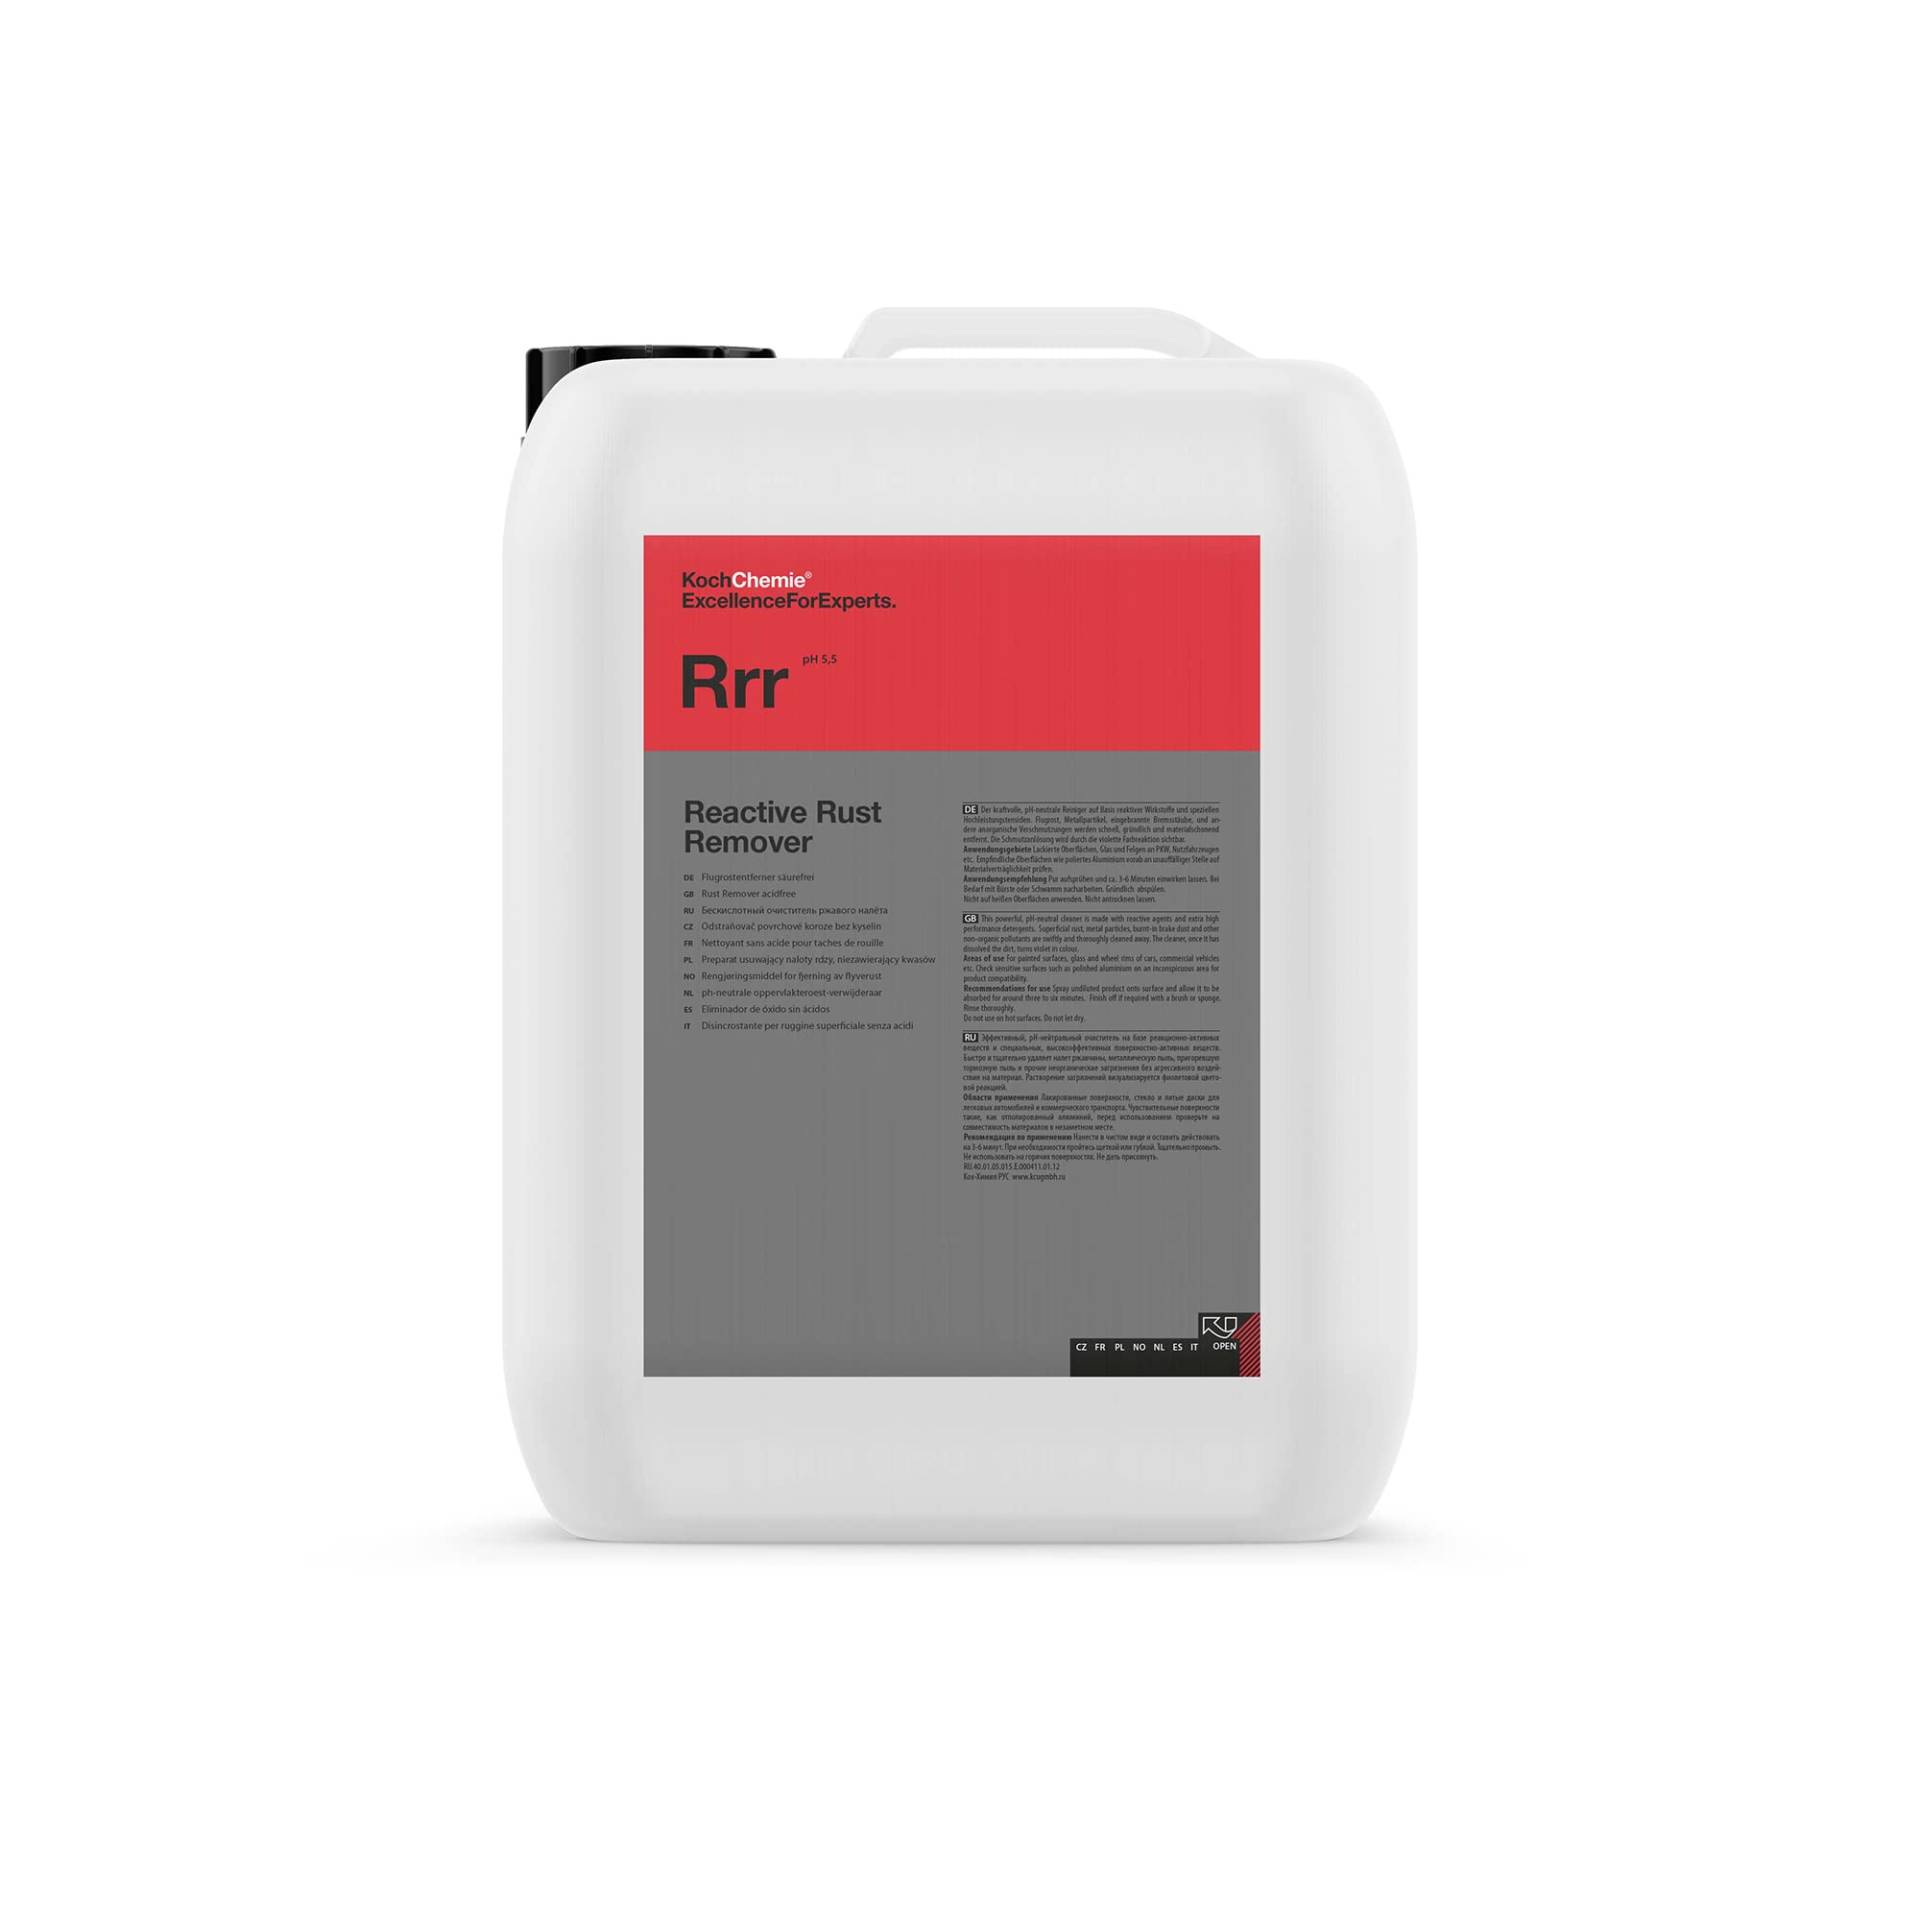 Rrr Koch Chemie Reactive Rust Remover Flugrostentferner 11 kg von KOCHCHEMIE